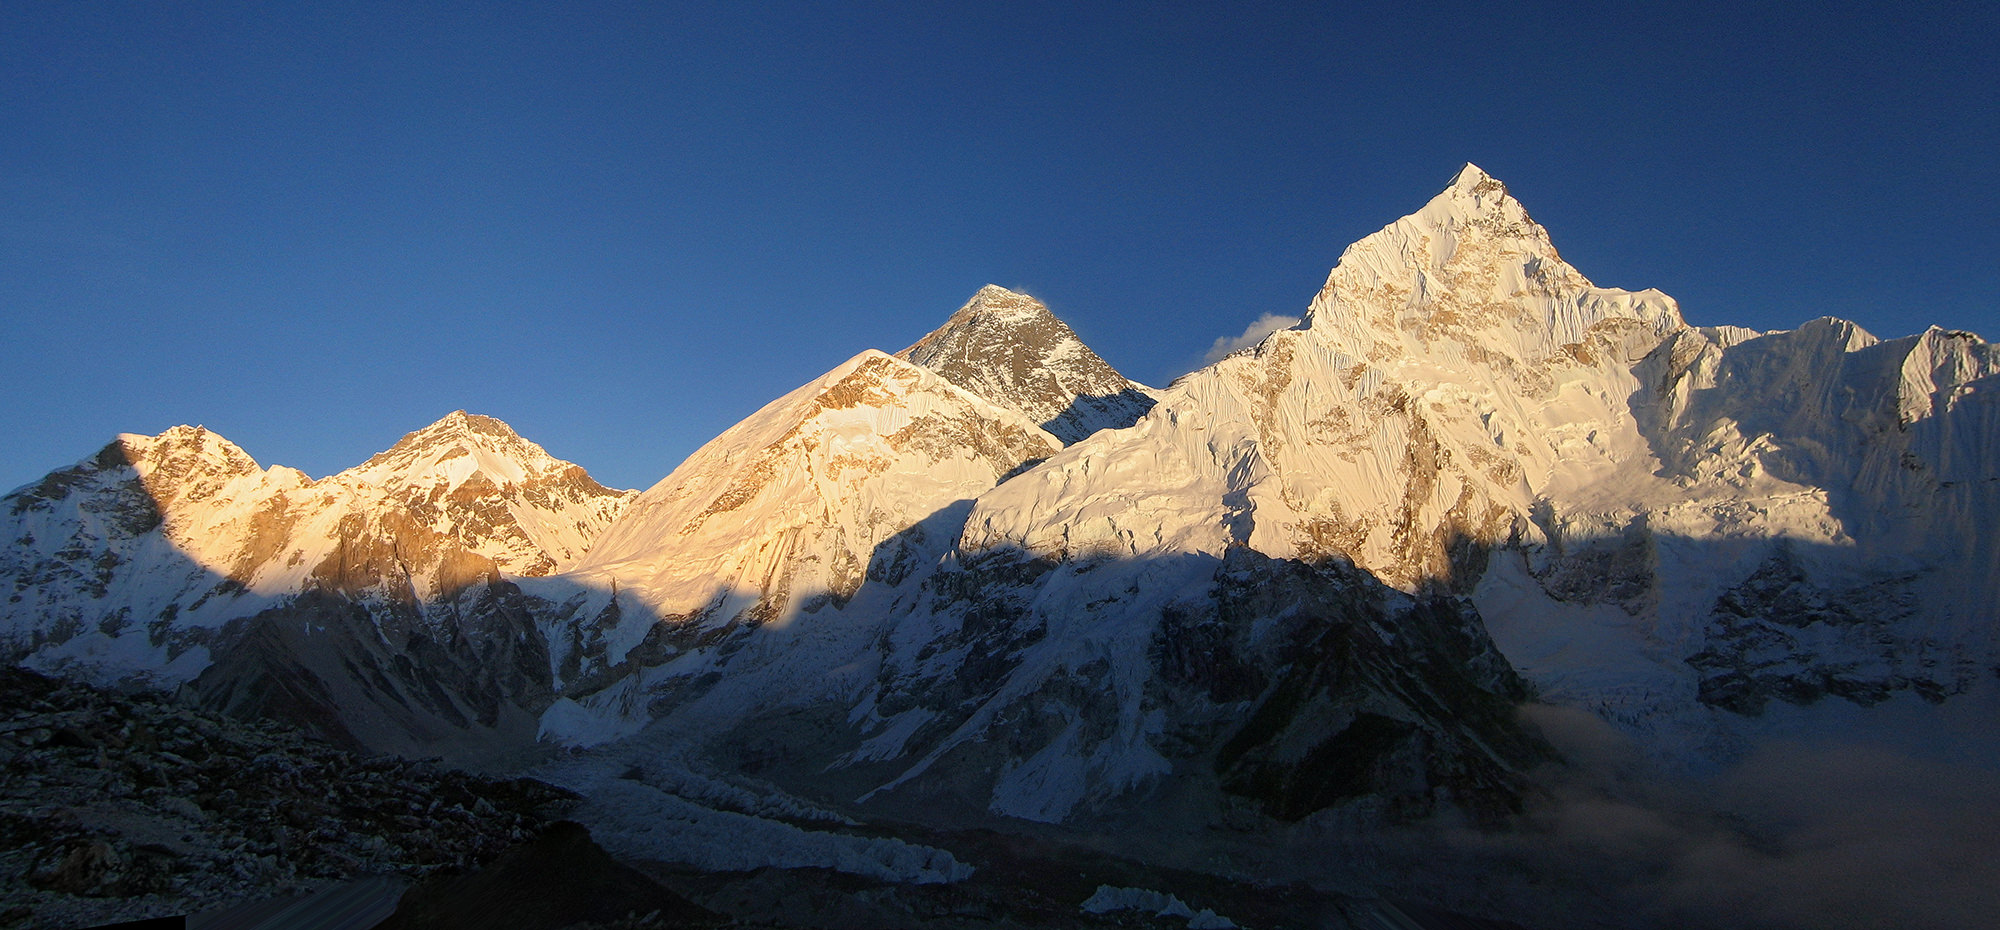 Эверест и окрестные горы в закатном свете